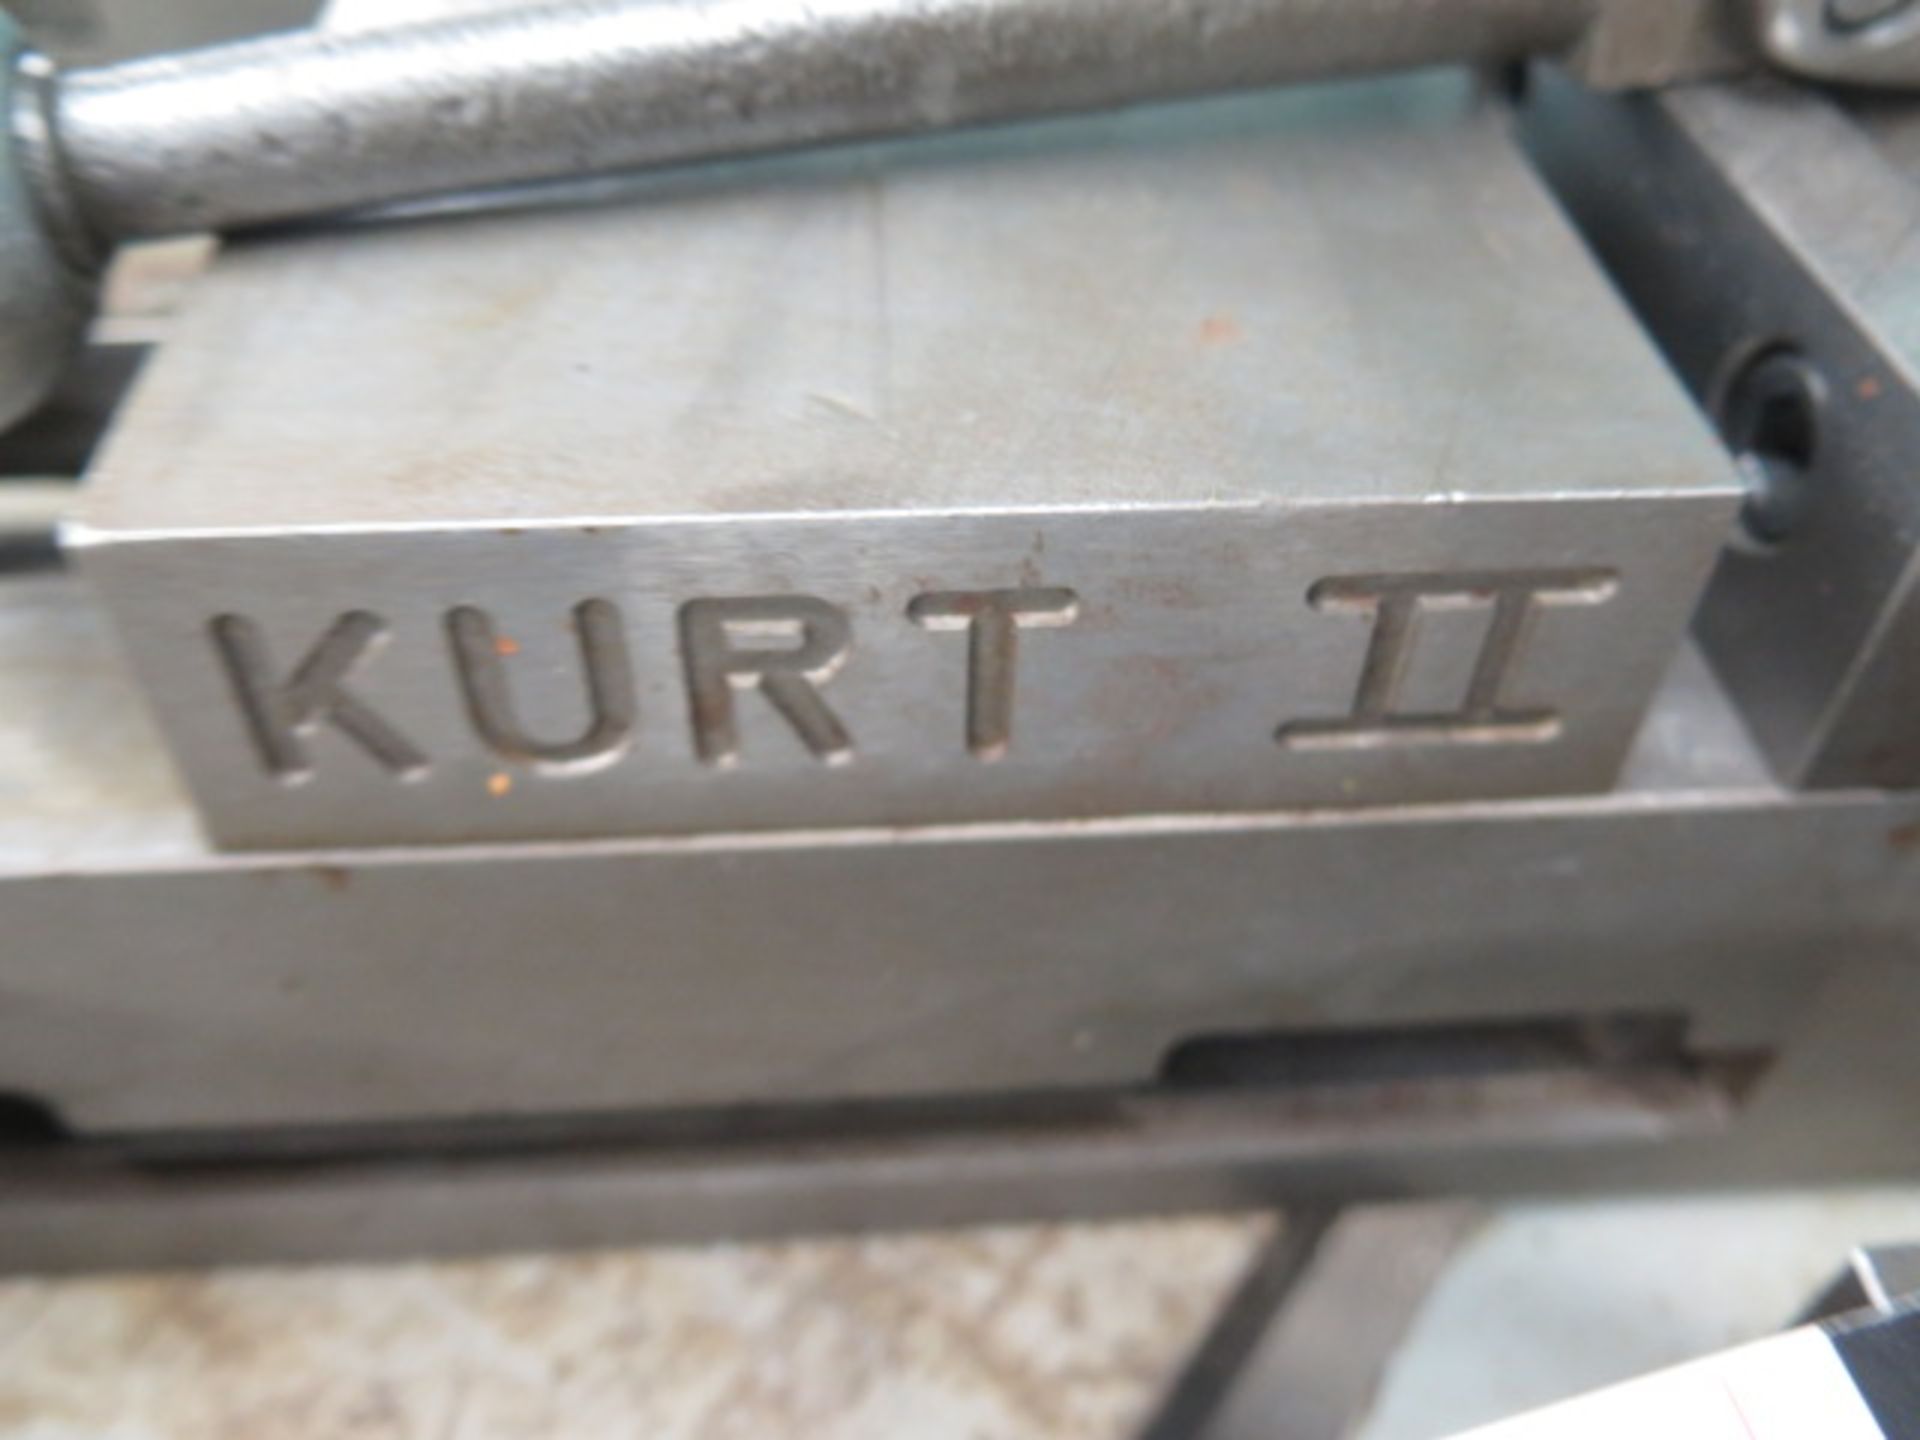 Kurt II 4" Angle-Lock Vise - Image 3 of 3